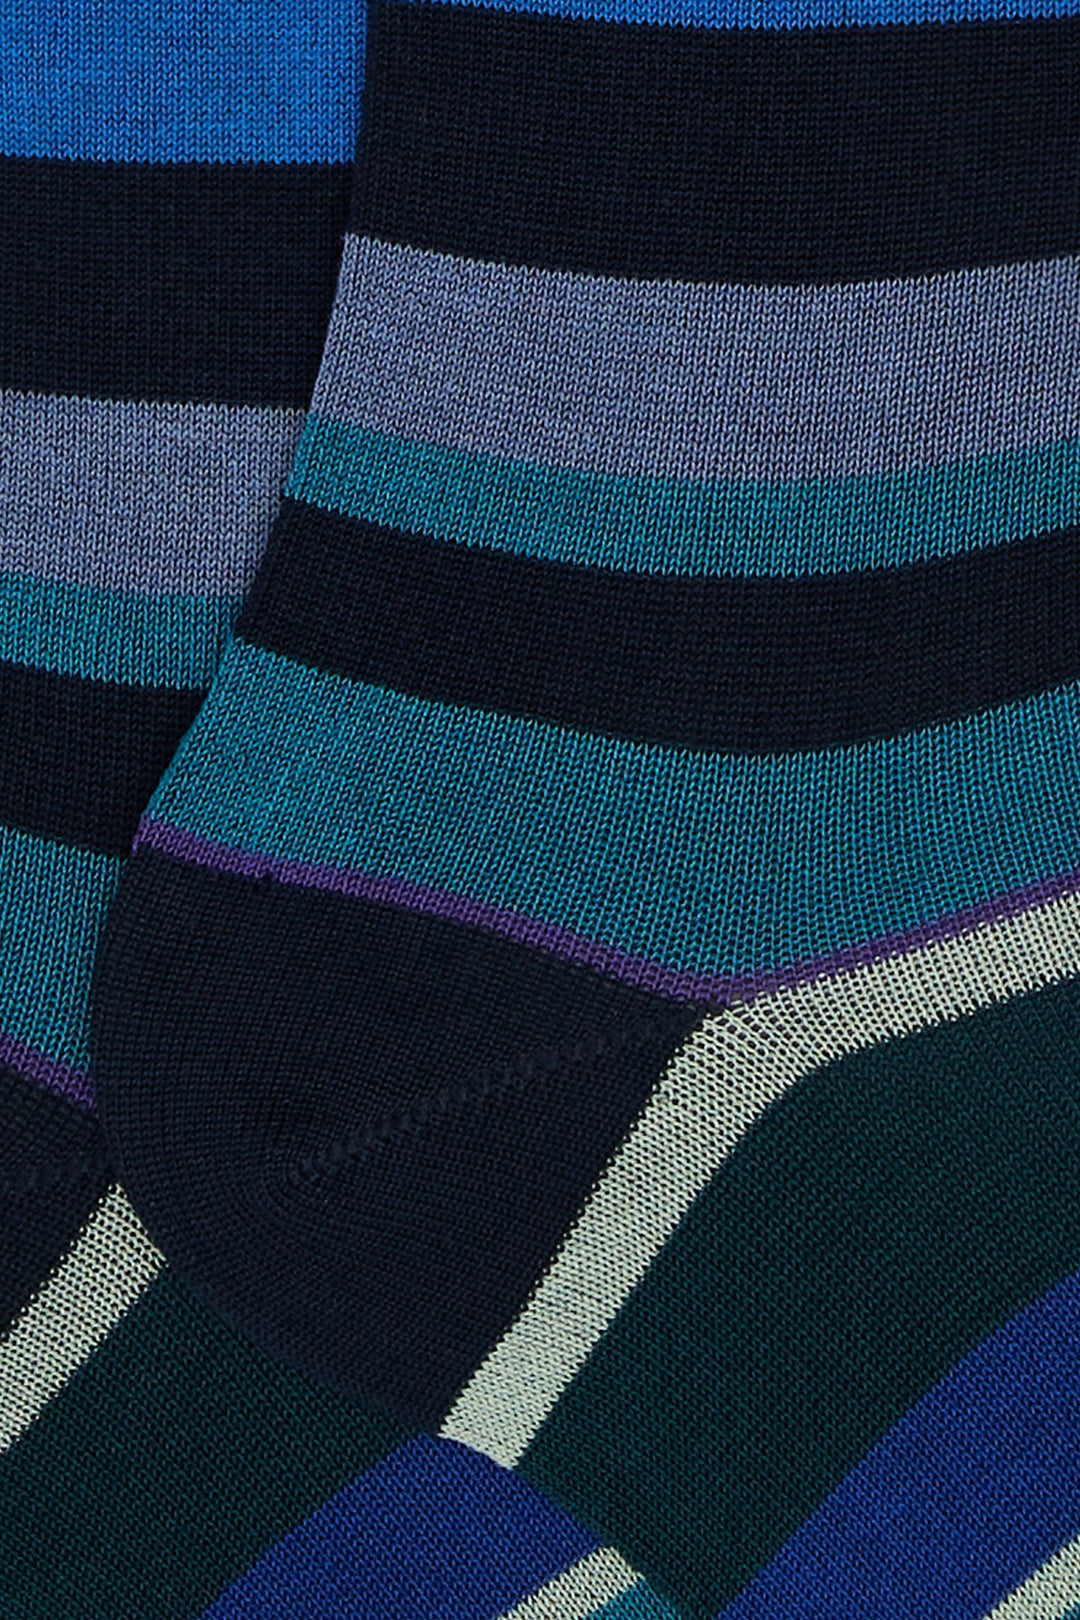 GALLO Calze lunghe cotone leggero oltremare righe multicolor - Mancinelli 1954